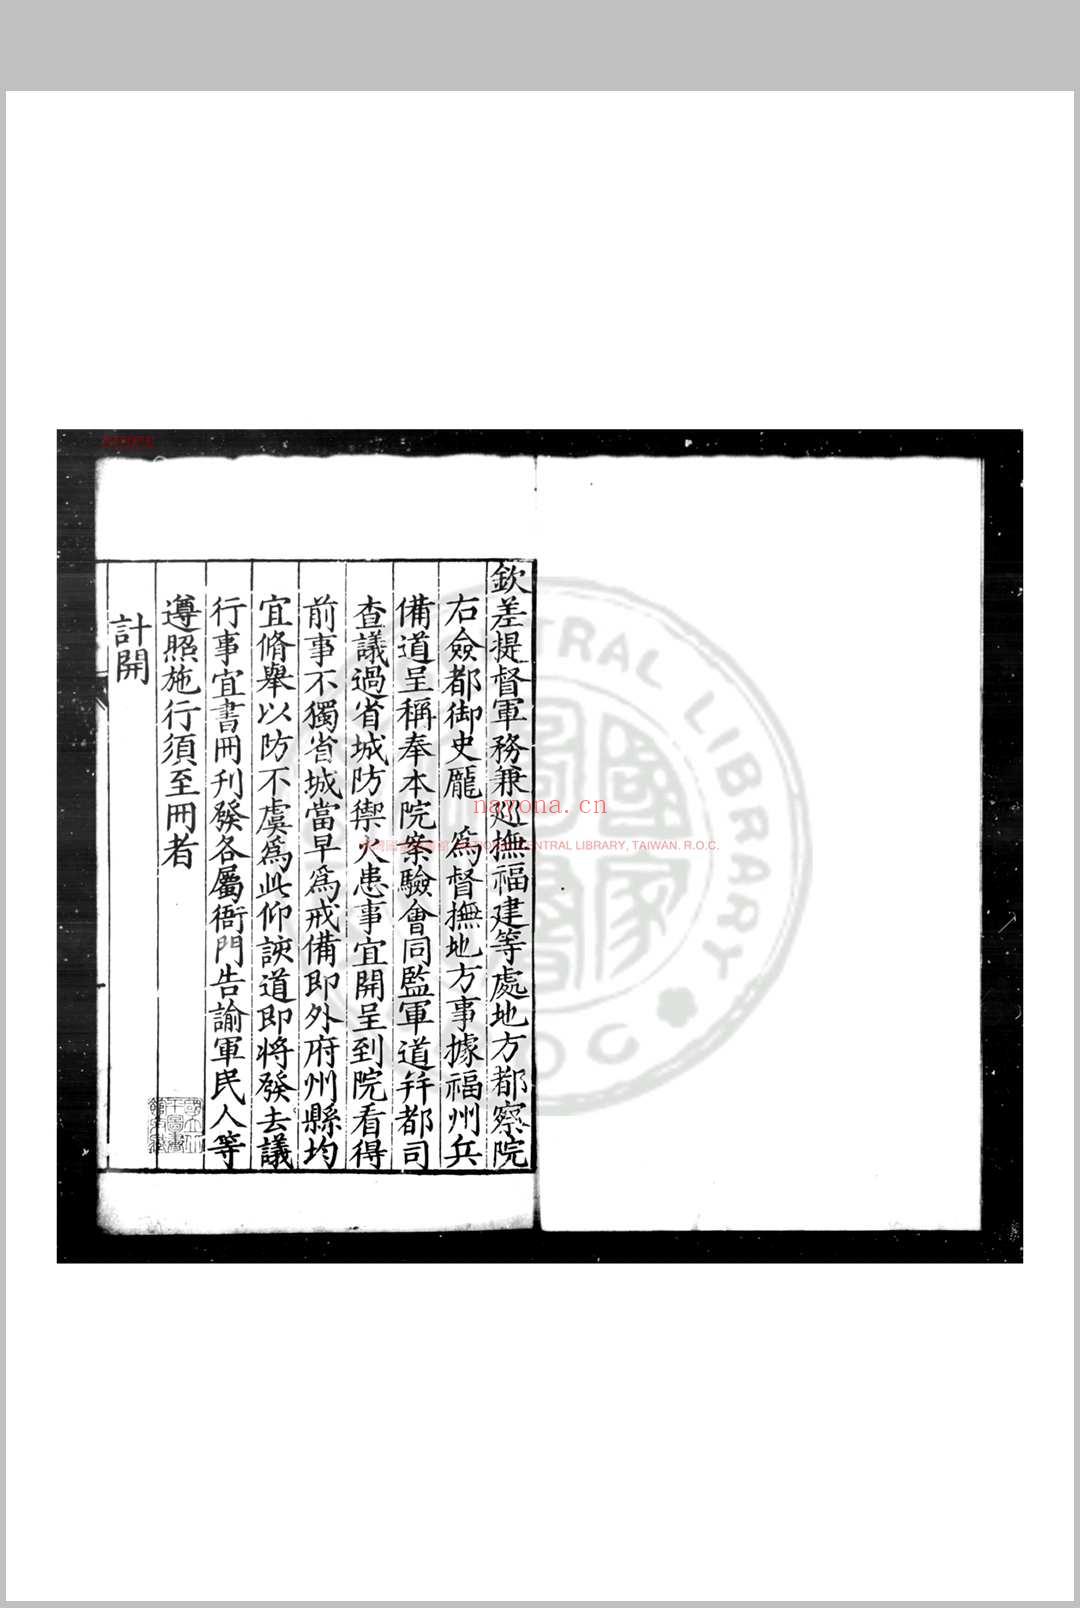 福建省城防御火患事宜 (明)庞尚鹏撰 明万历五年(1577)福建官刊本